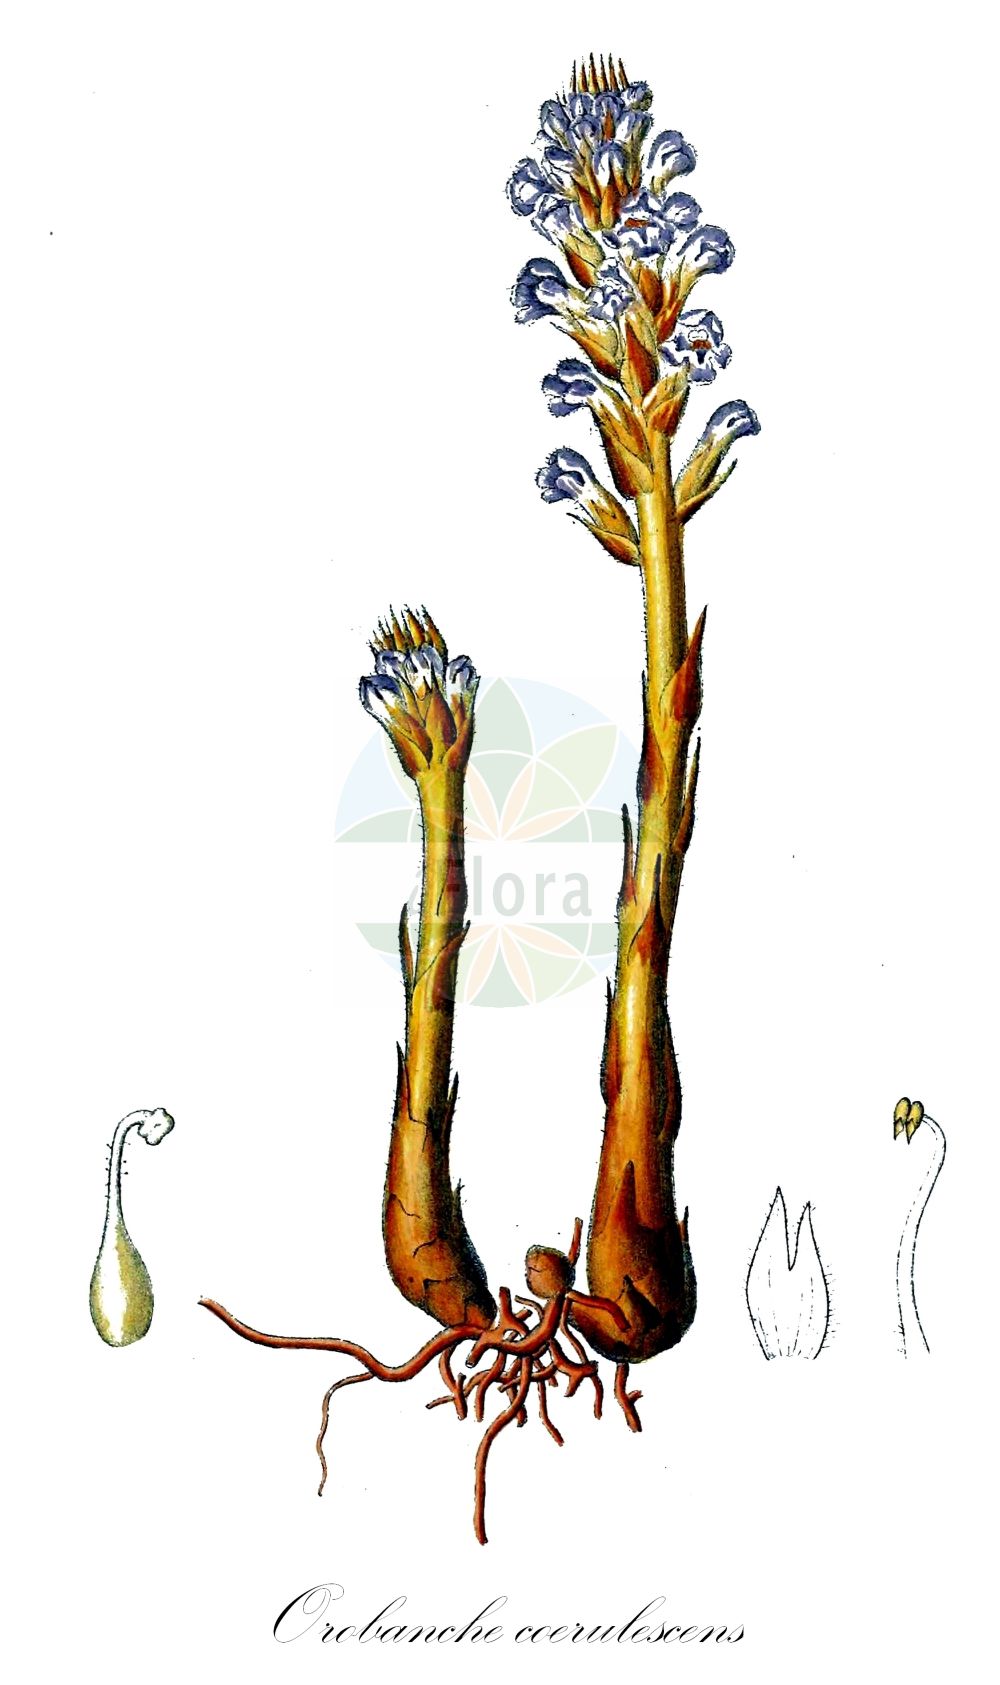 Historische Abbildung von Orobanche coerulescens (Bläuliche Sommerwurz - Blue Broomrape). Das Bild zeigt Blatt, Bluete, Frucht und Same. ---- Historical Drawing of Orobanche coerulescens (Bläuliche Sommerwurz - Blue Broomrape). The image is showing leaf, flower, fruit and seed.(Orobanche coerulescens,Bläuliche Sommerwurz,Blue Broomrape,Orobanche coerulescens,Orobanche korshinskyi,Blaeuliche Sommerwurz,Blue Broomrape,Orobanche,Sommerwurz,Broomrape,Orobanchaceae,Sommerwurzgewächse,Broomrape family,Blatt,Bluete,Frucht,Same,leaf,flower,fruit,seed,Dietrich (1833-1844))